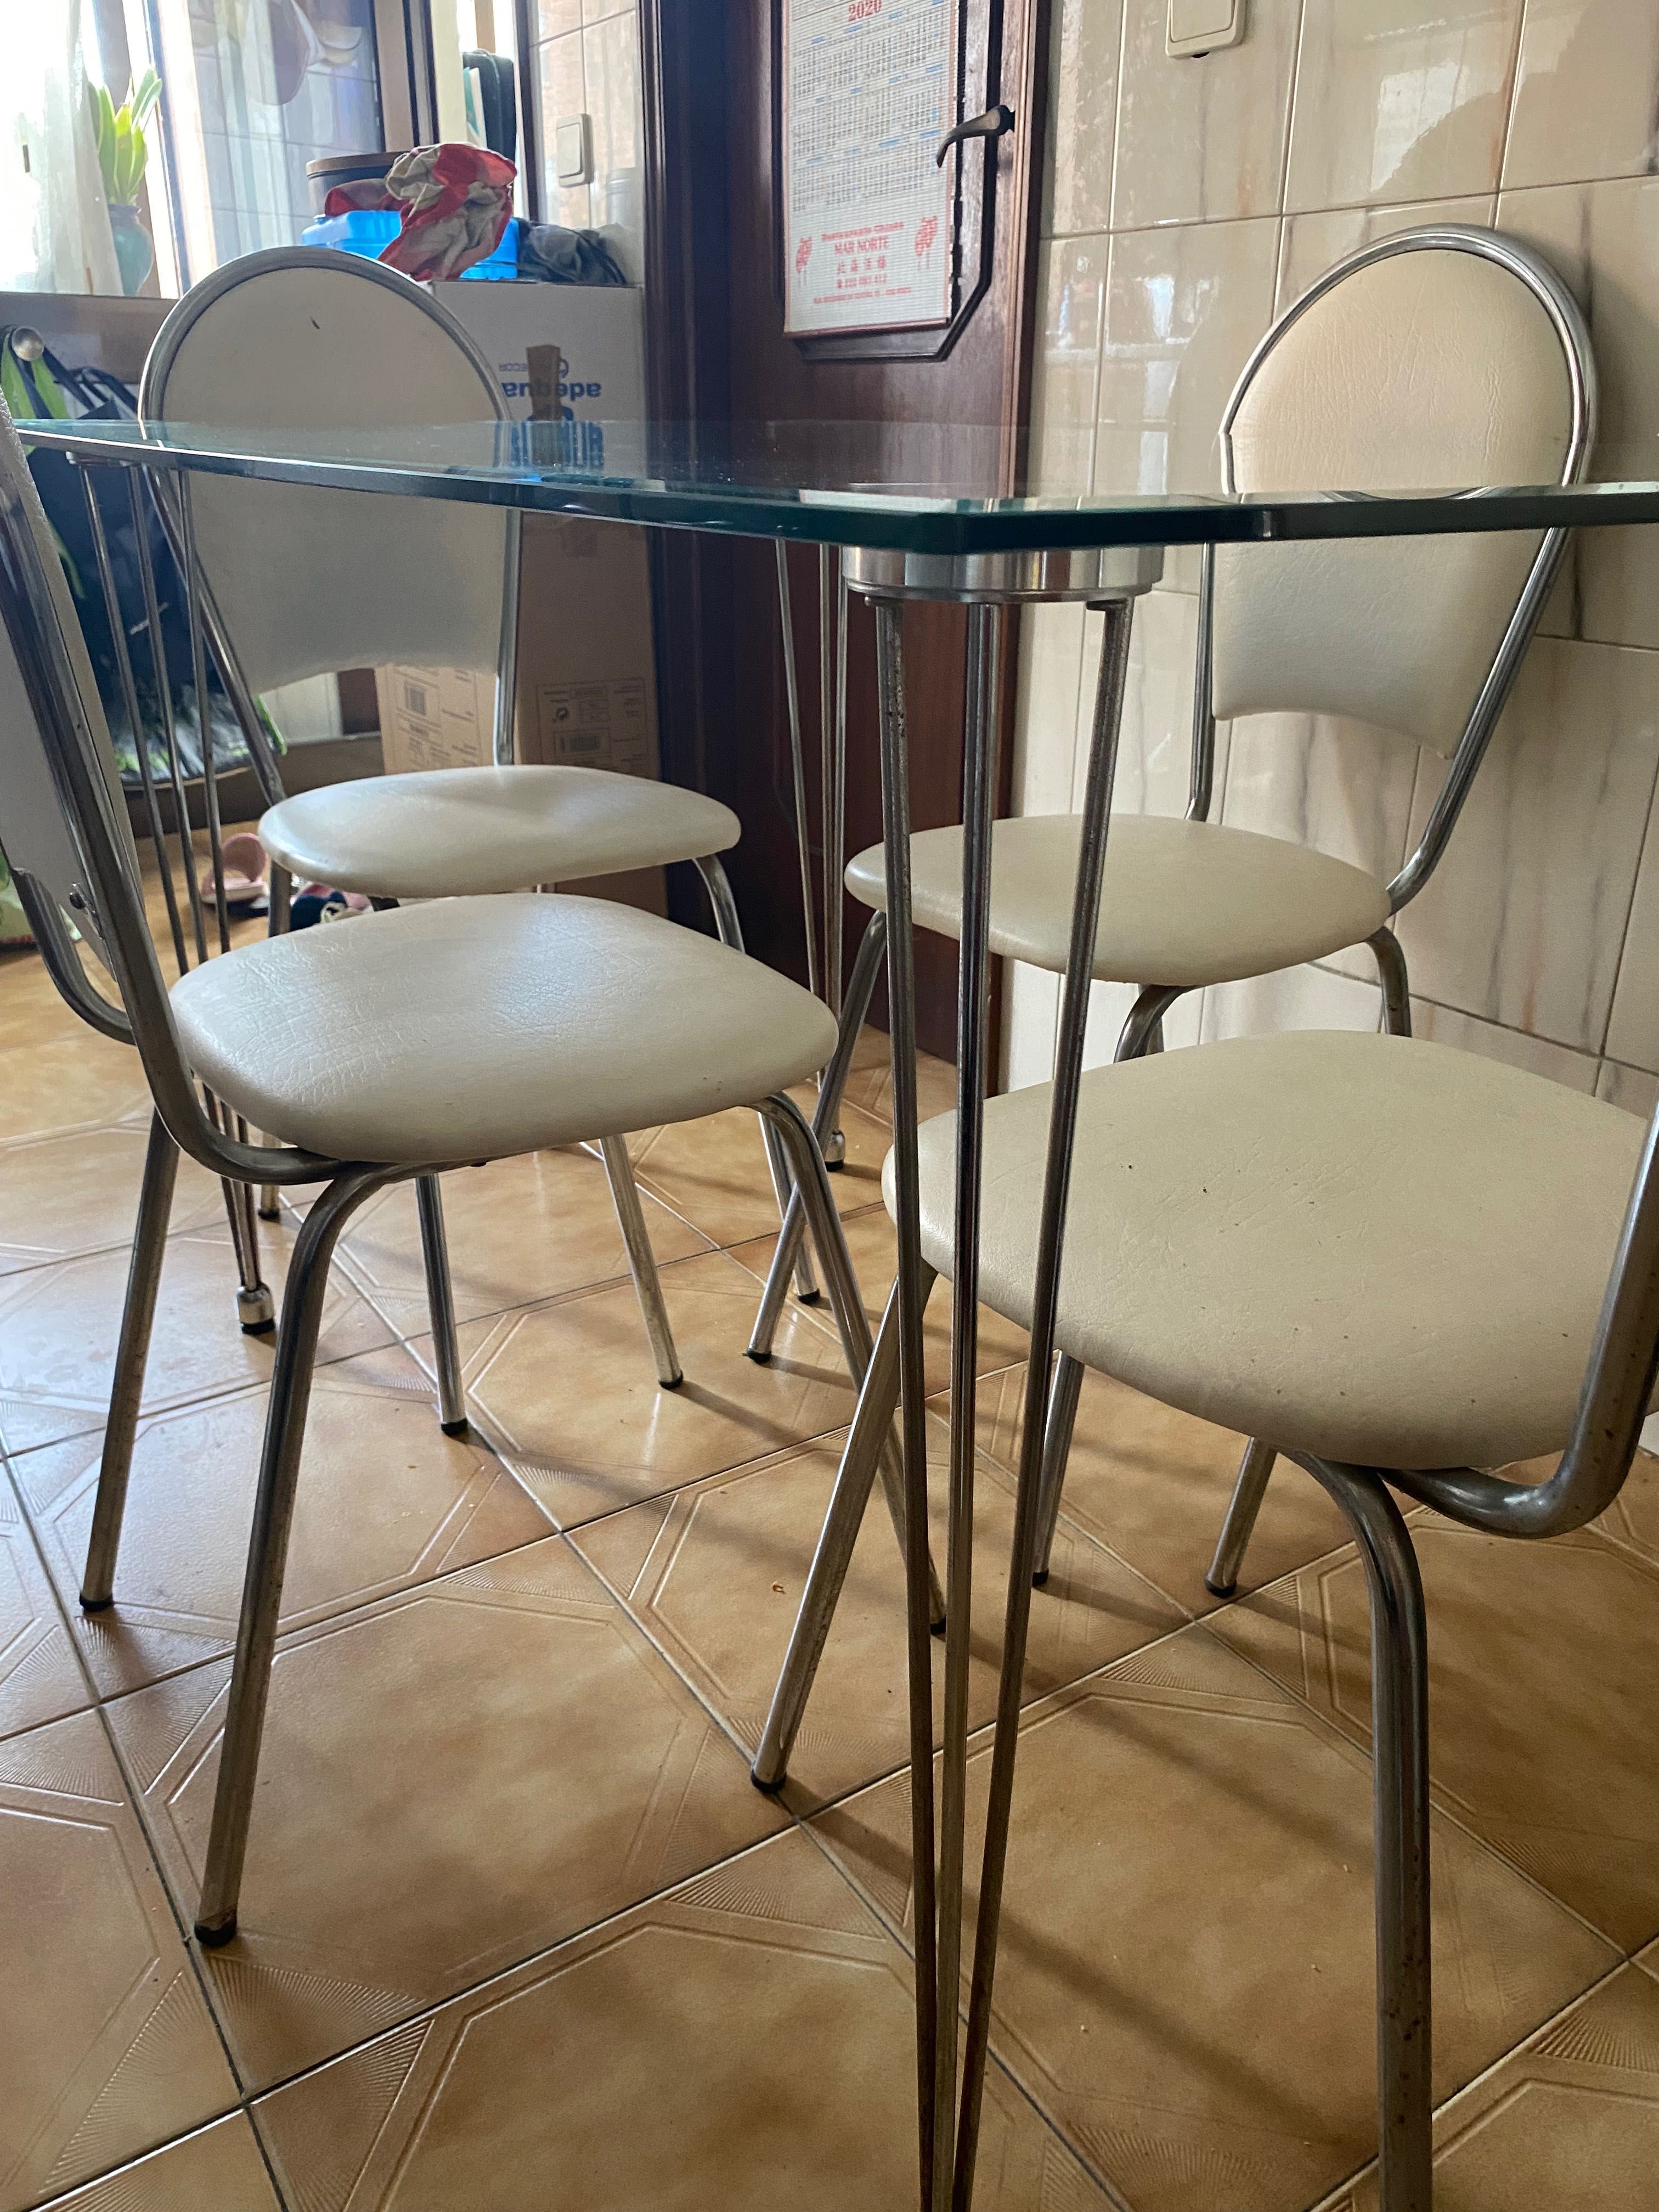 Mesa de cozinha com 4 cadeiras